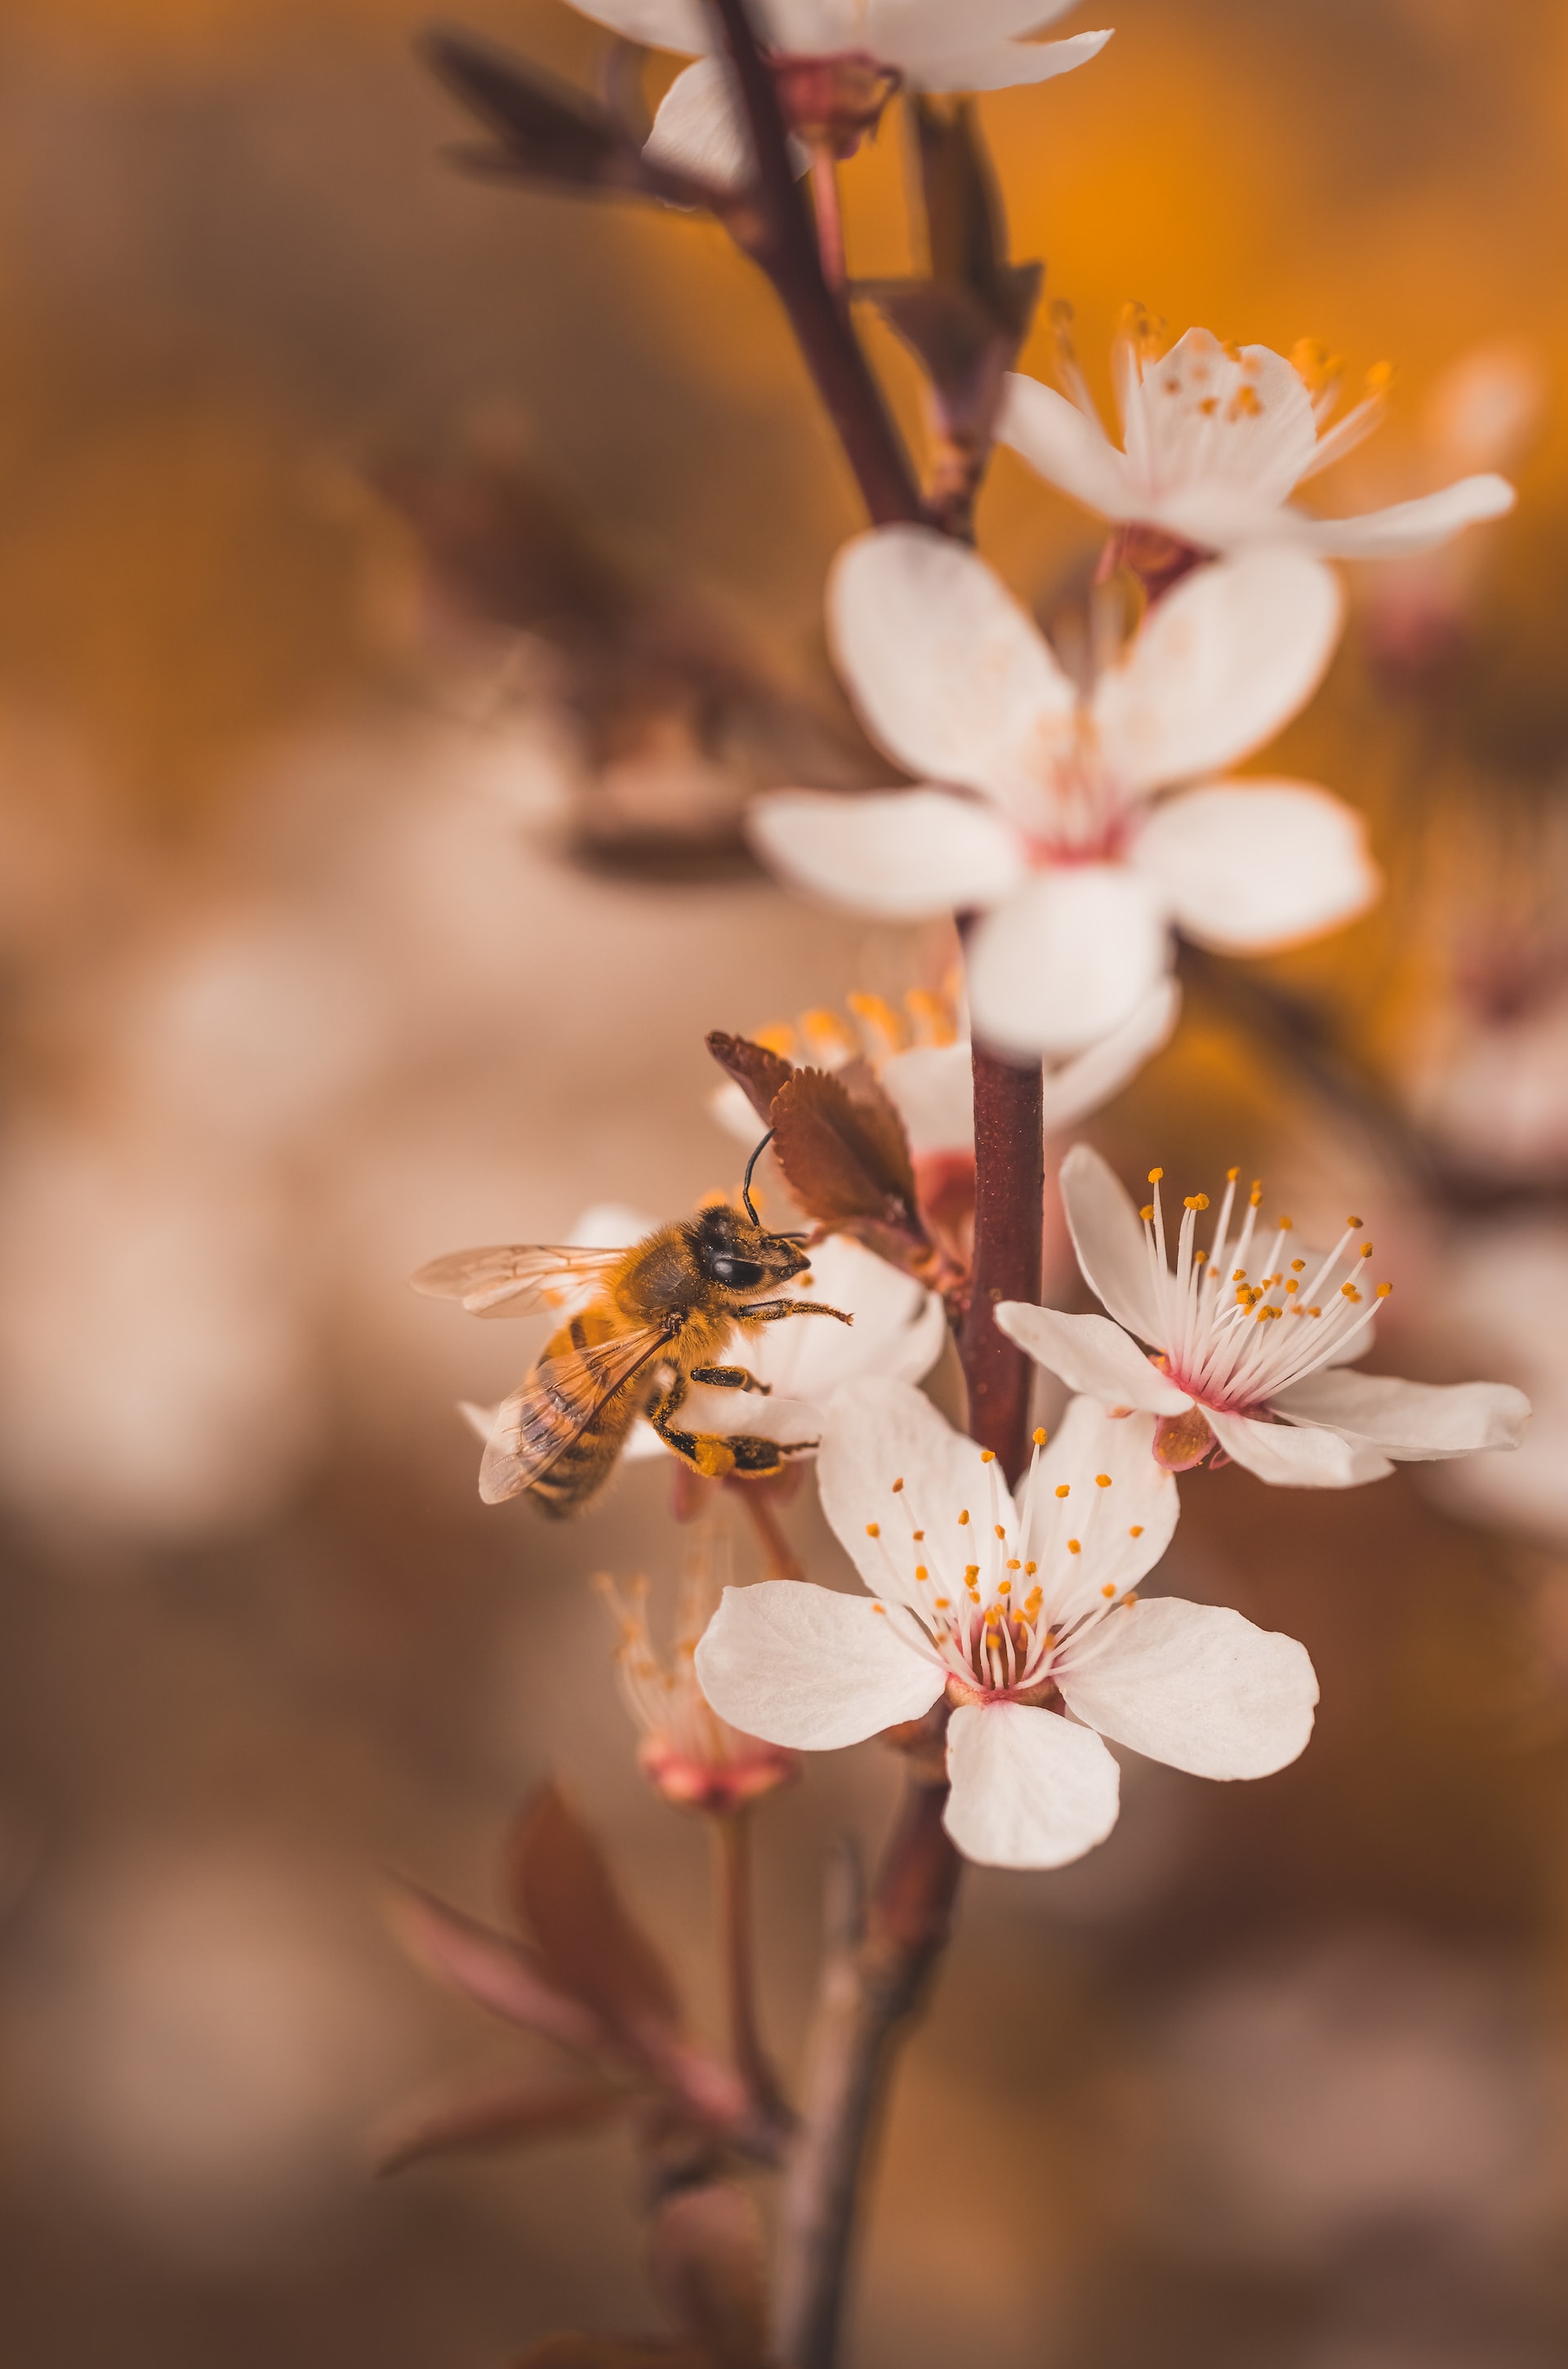 Το δηλητήριο της μέλισσας μπορεί να θεραπεύσει τον καρκίνο του μαστού, σύμφωνα με έρευνα